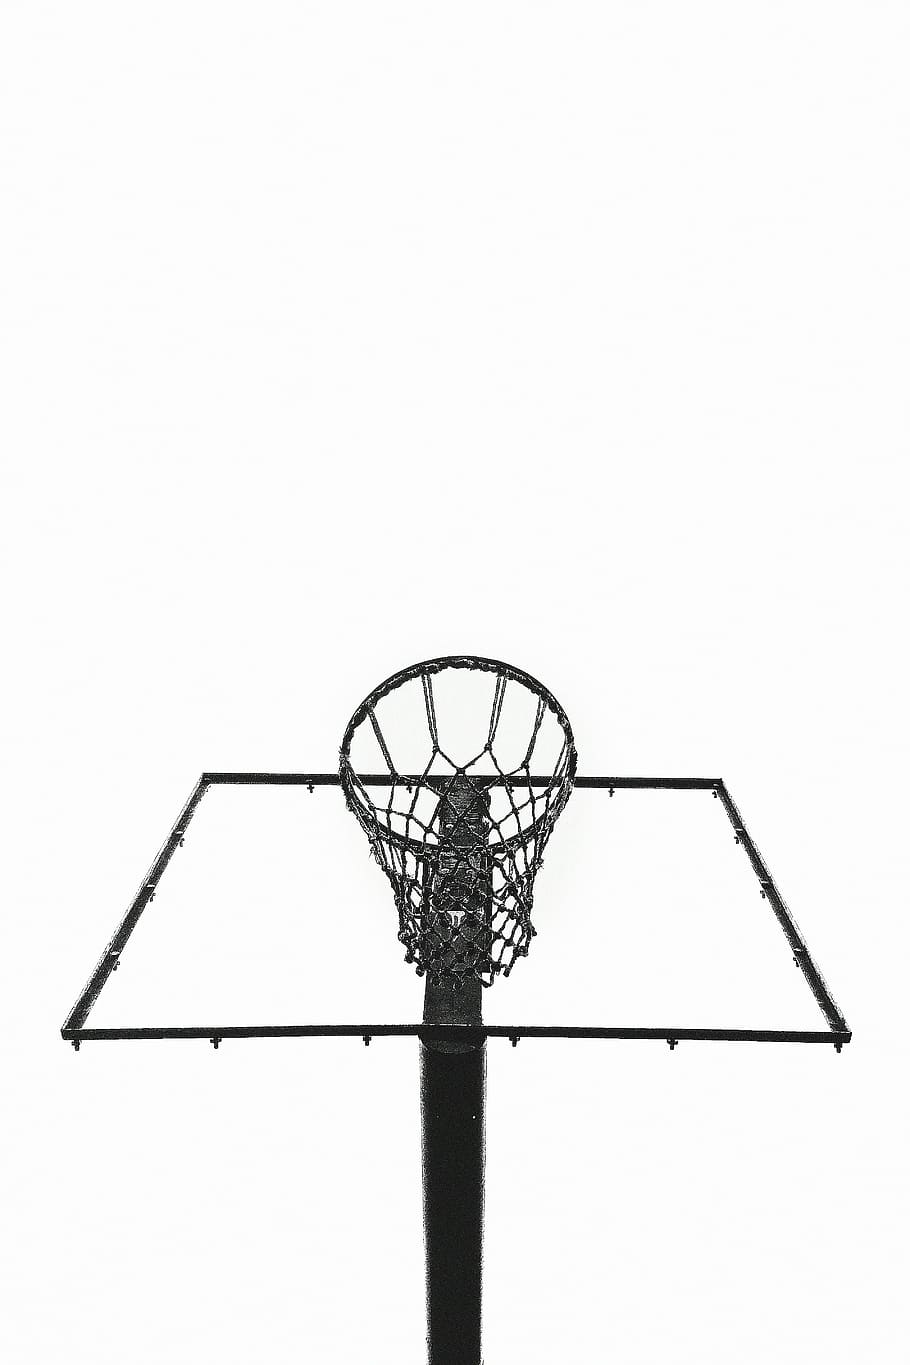 black basketball hoop, black, steel, framed, basketball, hoop, net, hoops, fitness, sports